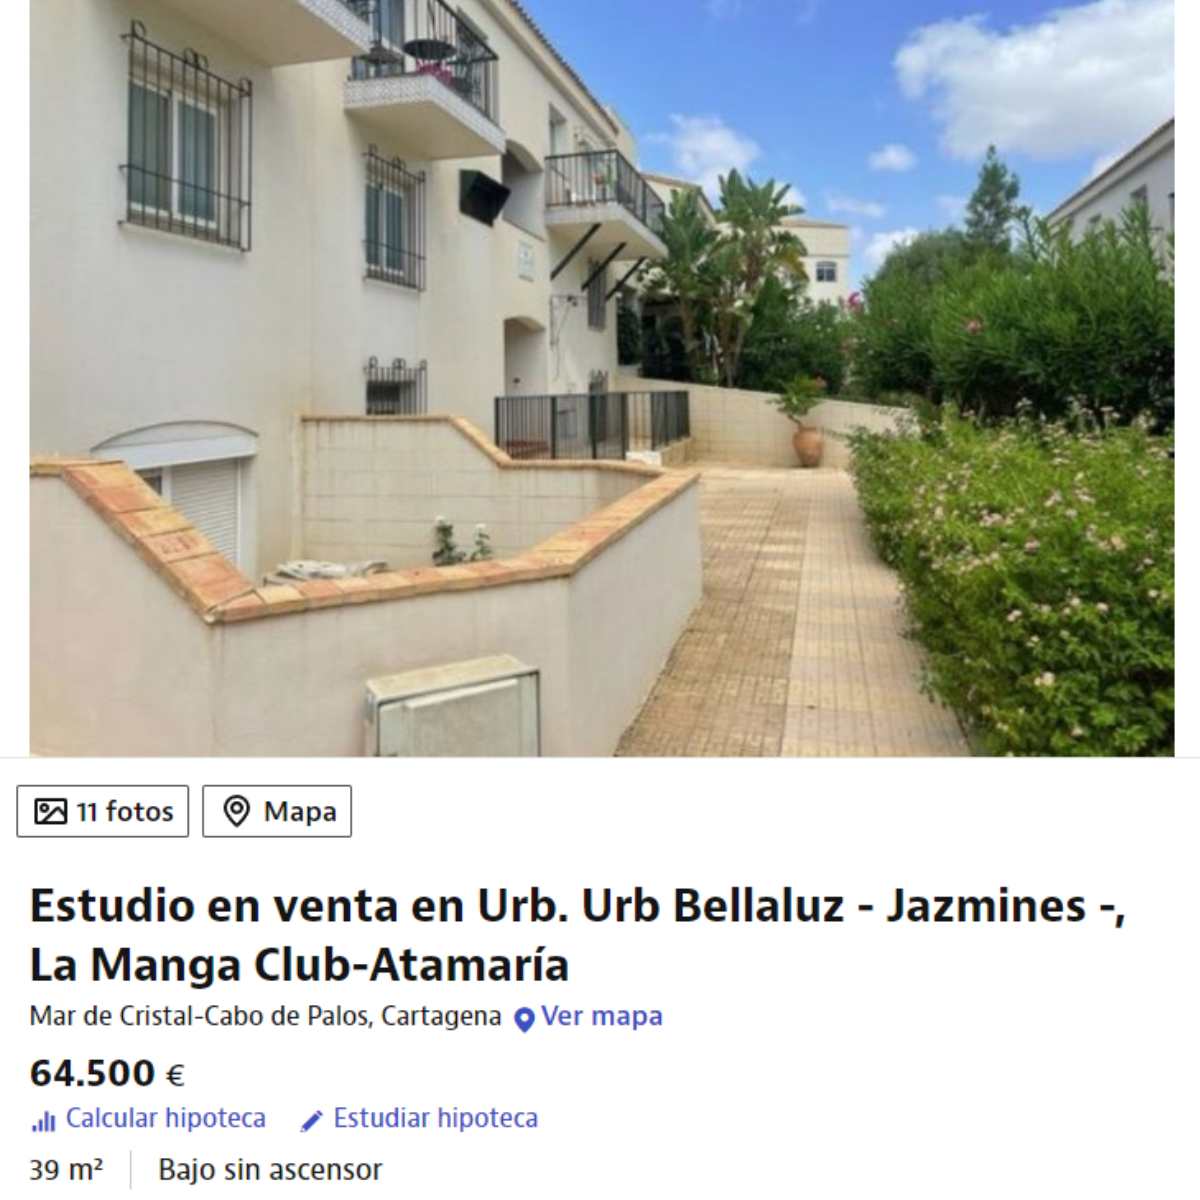 Estudio en venta en Cabo de Palos- Cartagena por un precio de 64.500 euros 